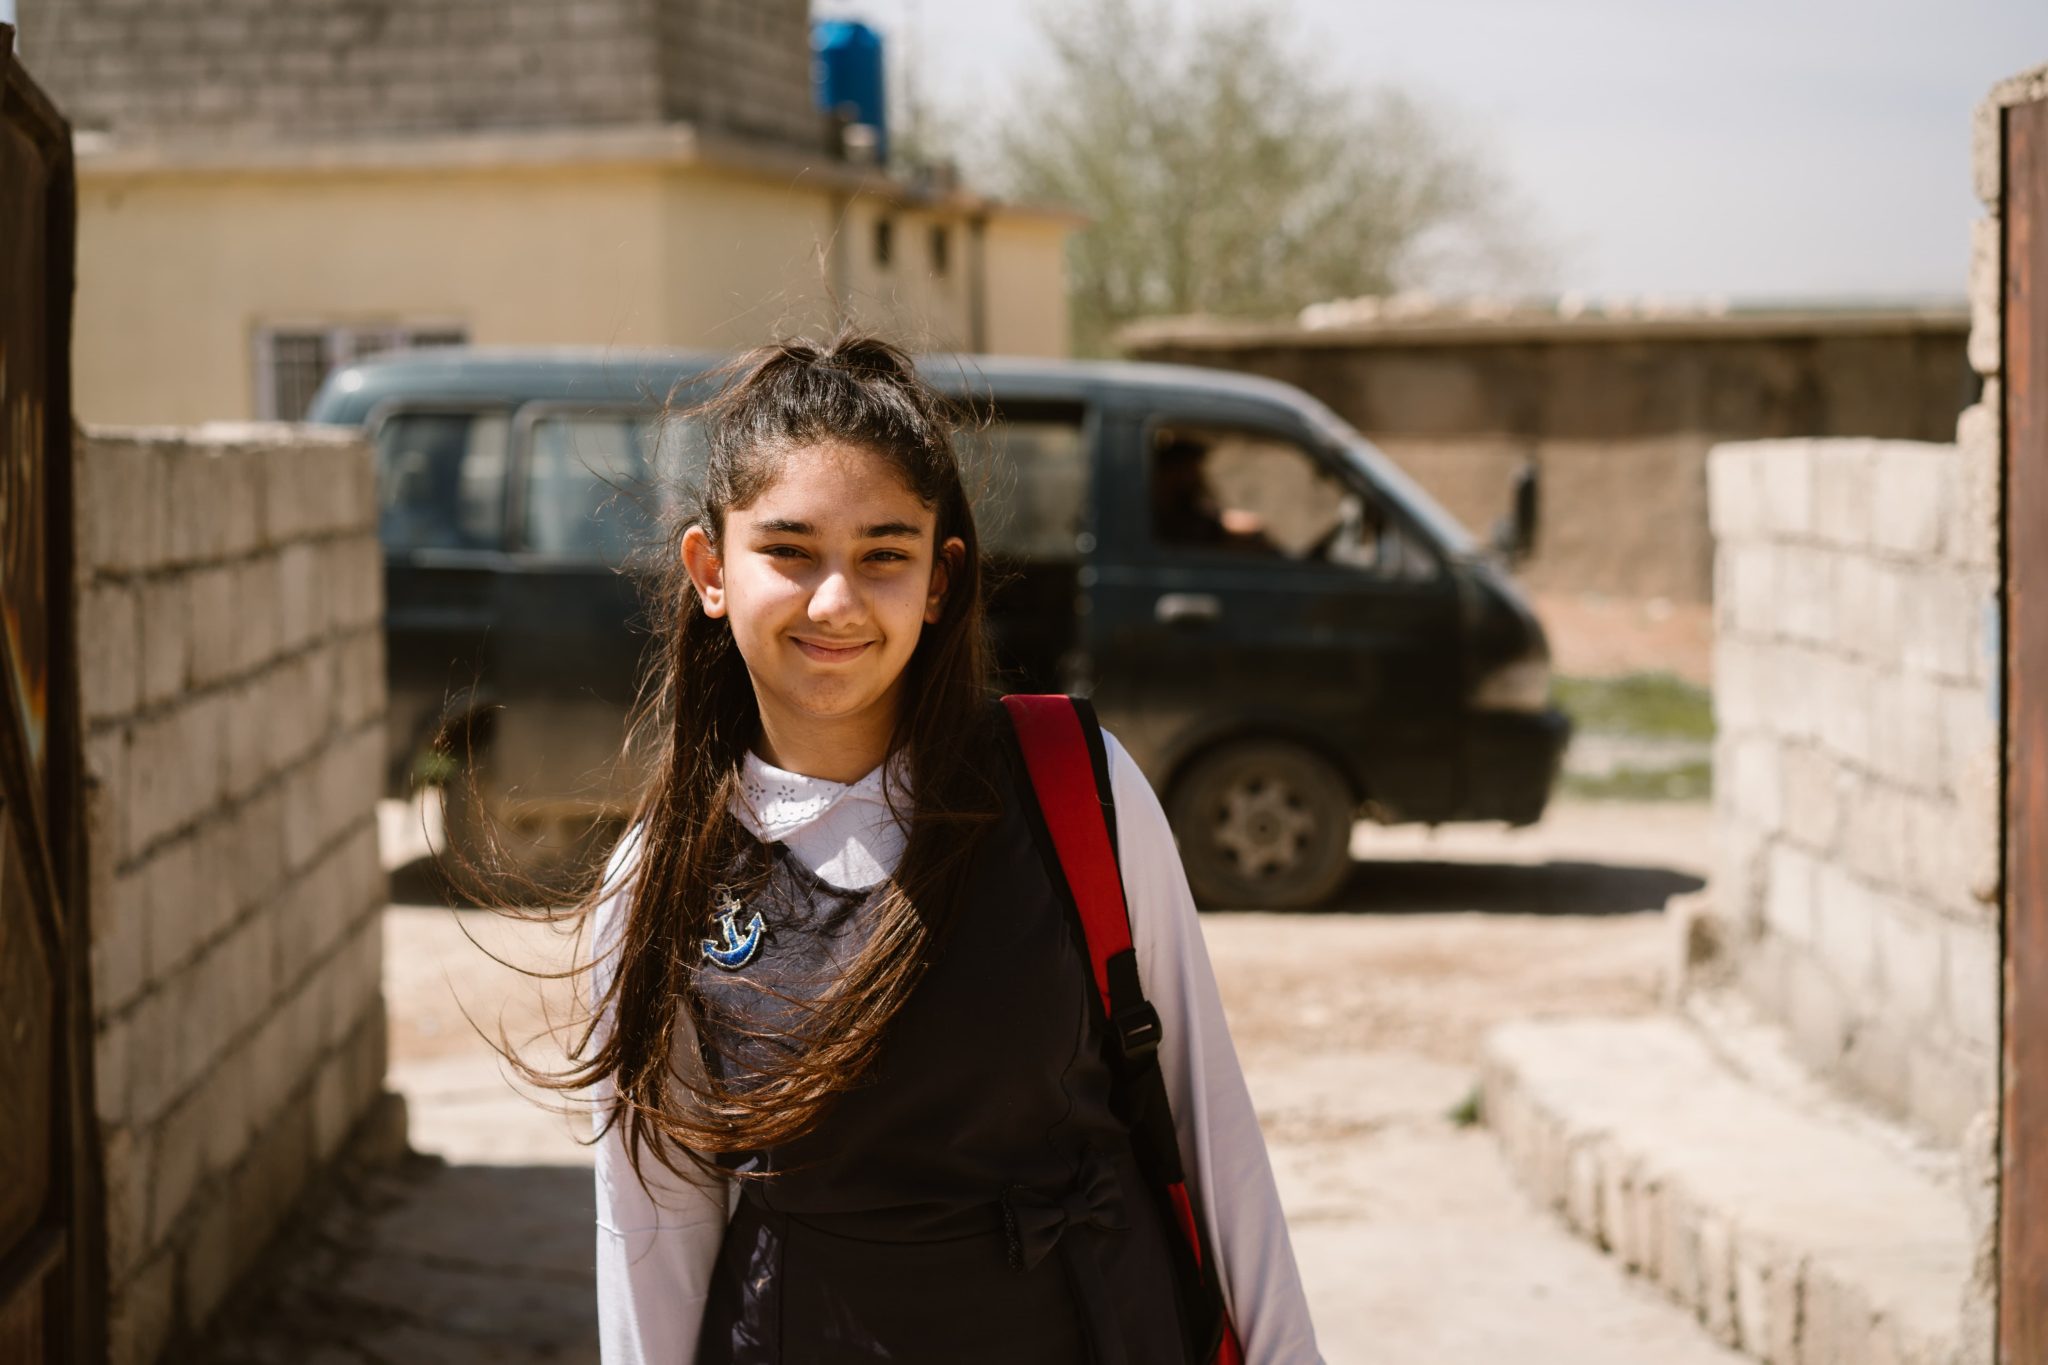 Tumma pitkähiuksinen koulutyttö hymyilee koulupuvussaan asuinalueen pihamaalla.